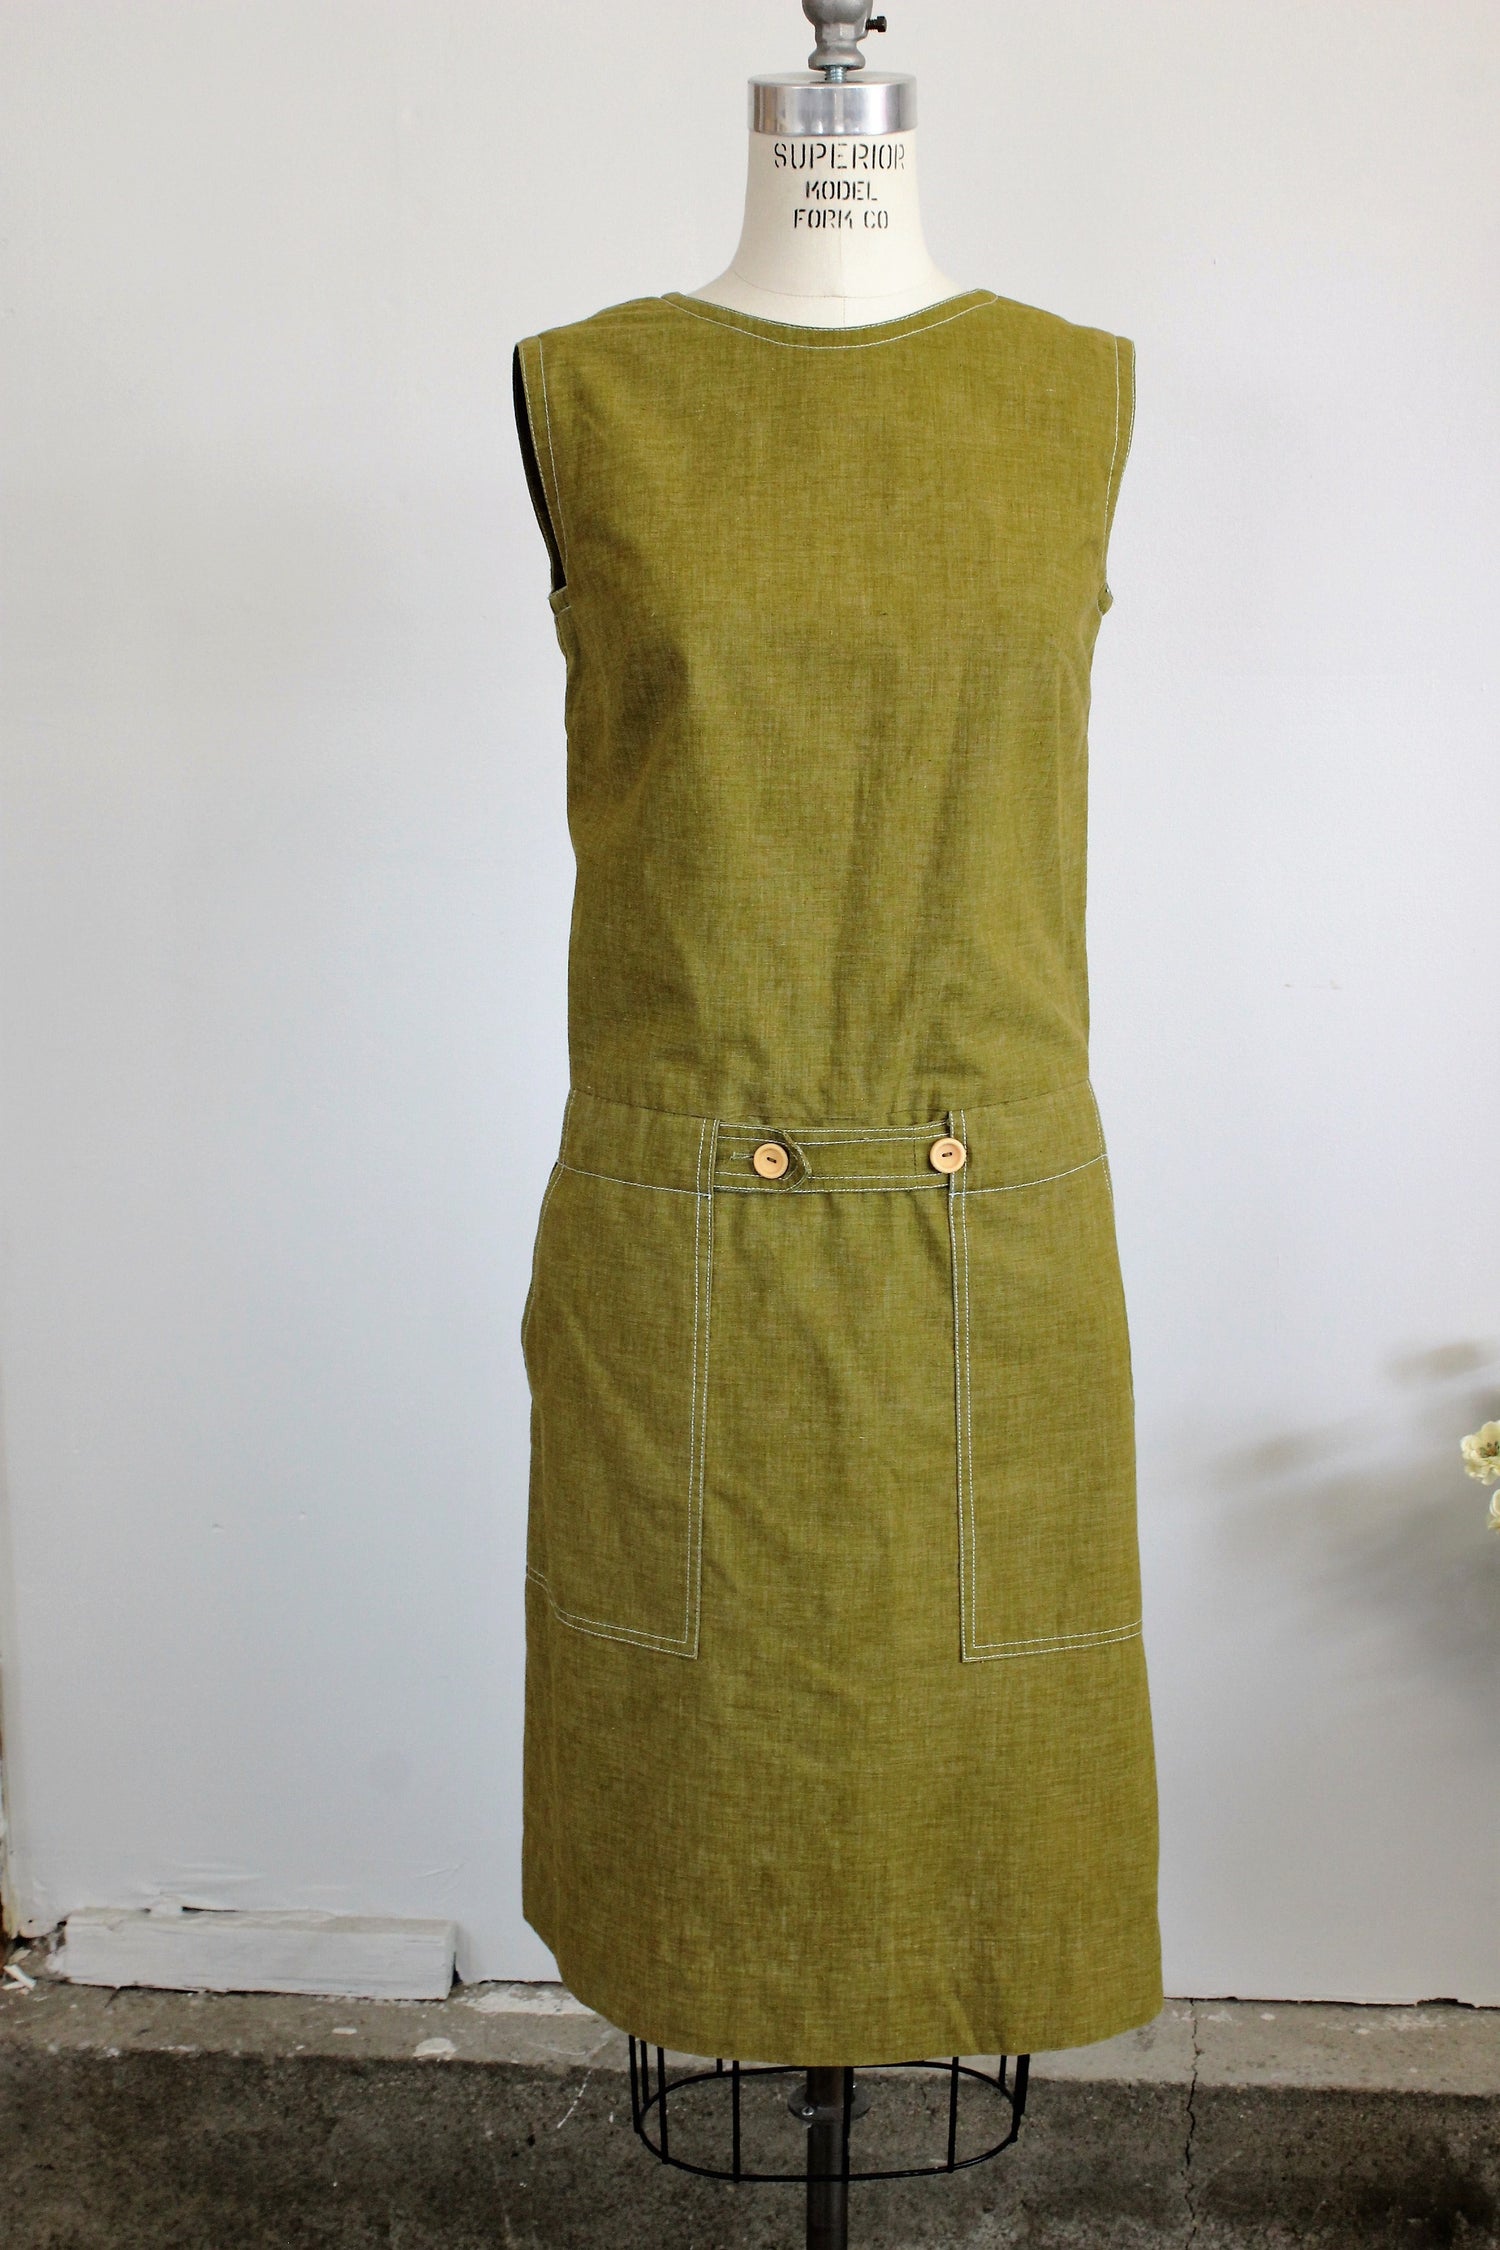 Vintage 1960s Mod Dress Romper With Pockets And Belt